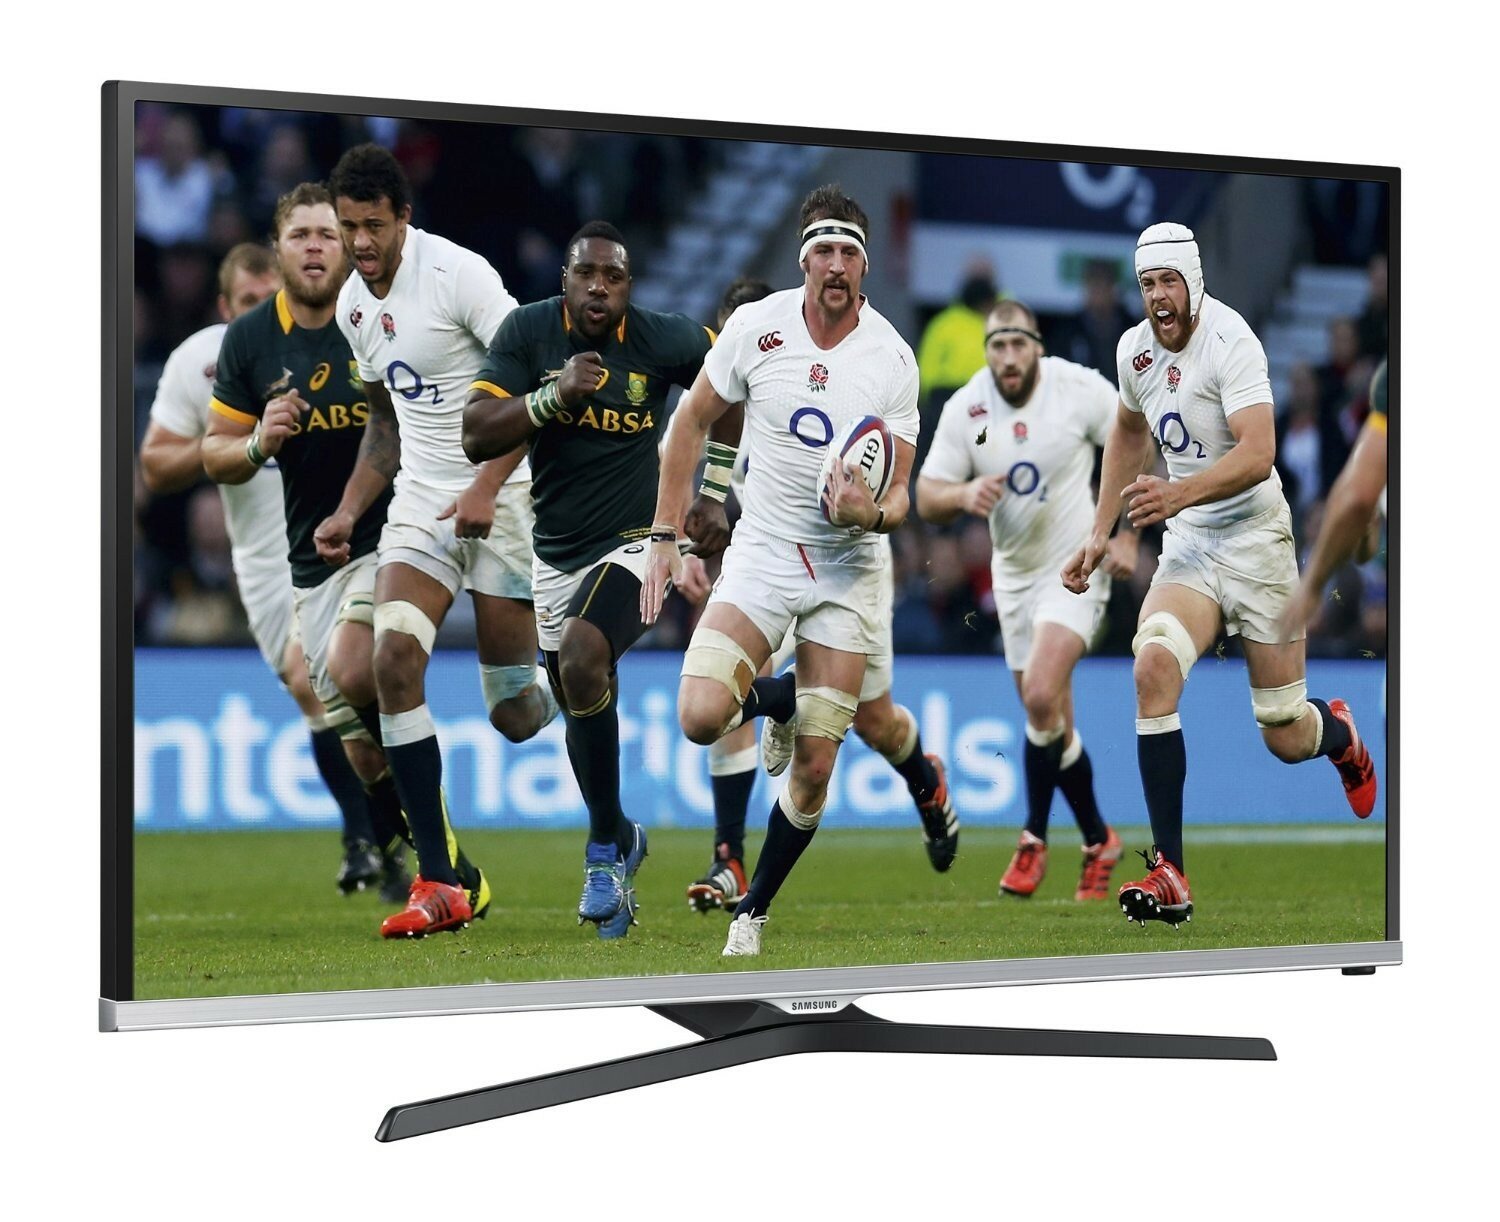 SAMSUNG LED UE40J5100 Telewizor - niskie ceny i opinie w Media Expert